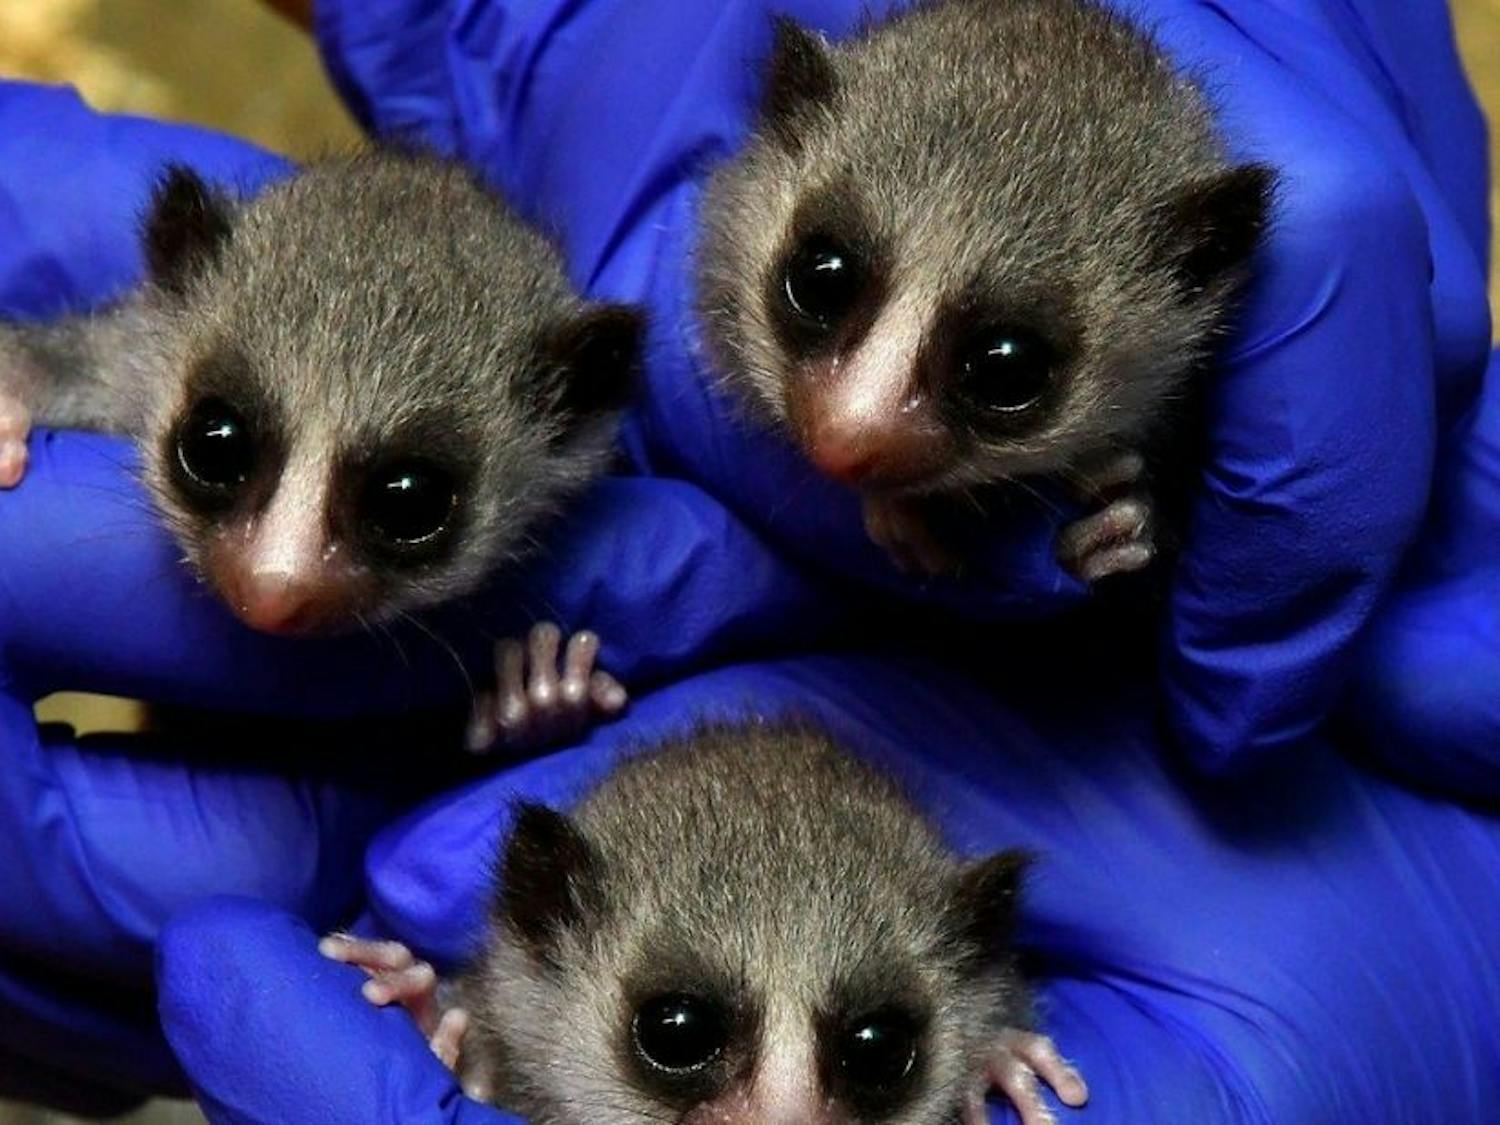 3 lemurs.jpg